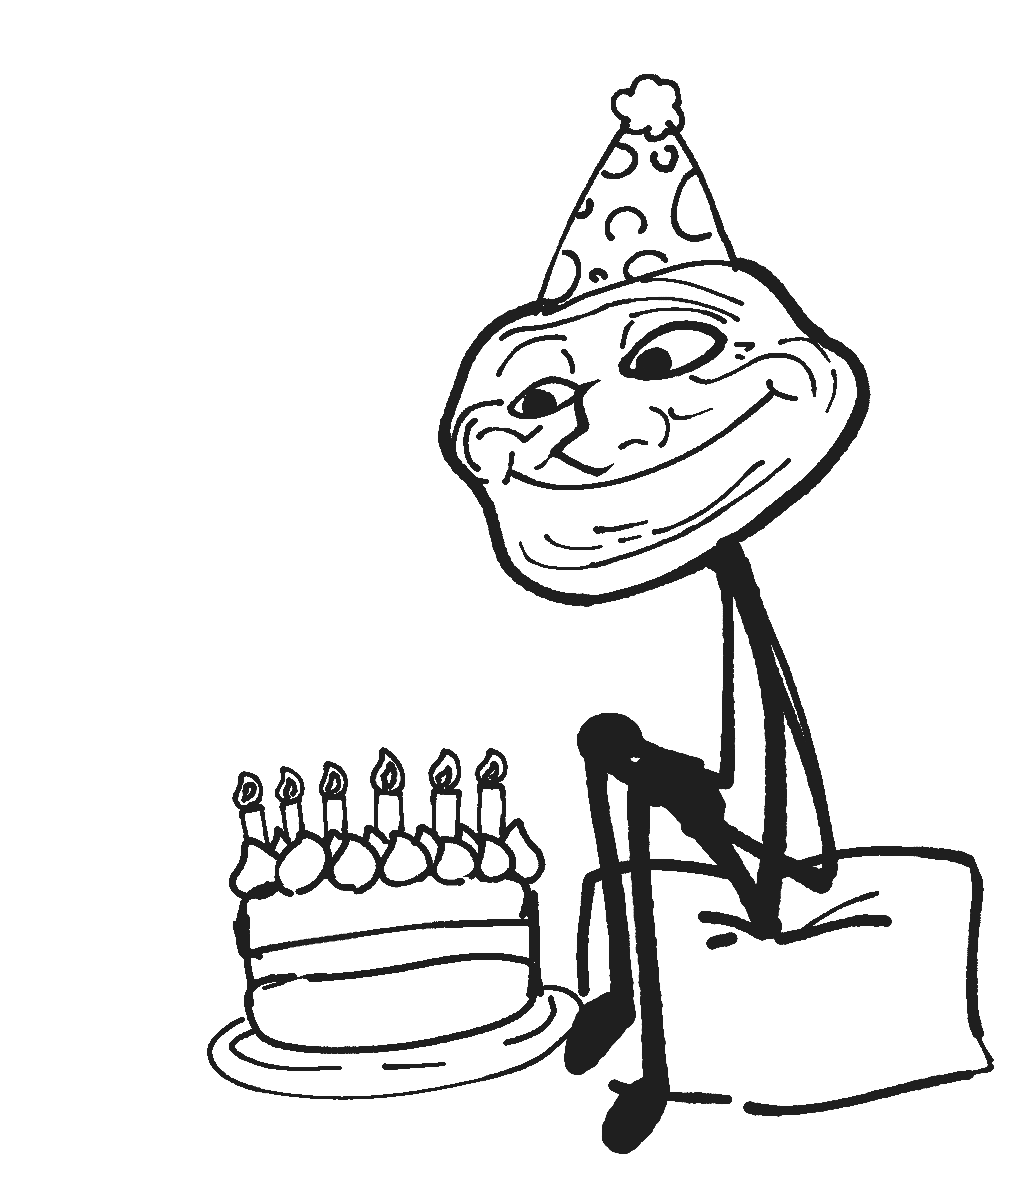 Tổng hợp 99 lời chúc mừng sinh nhật bạn hay ngắn gọn